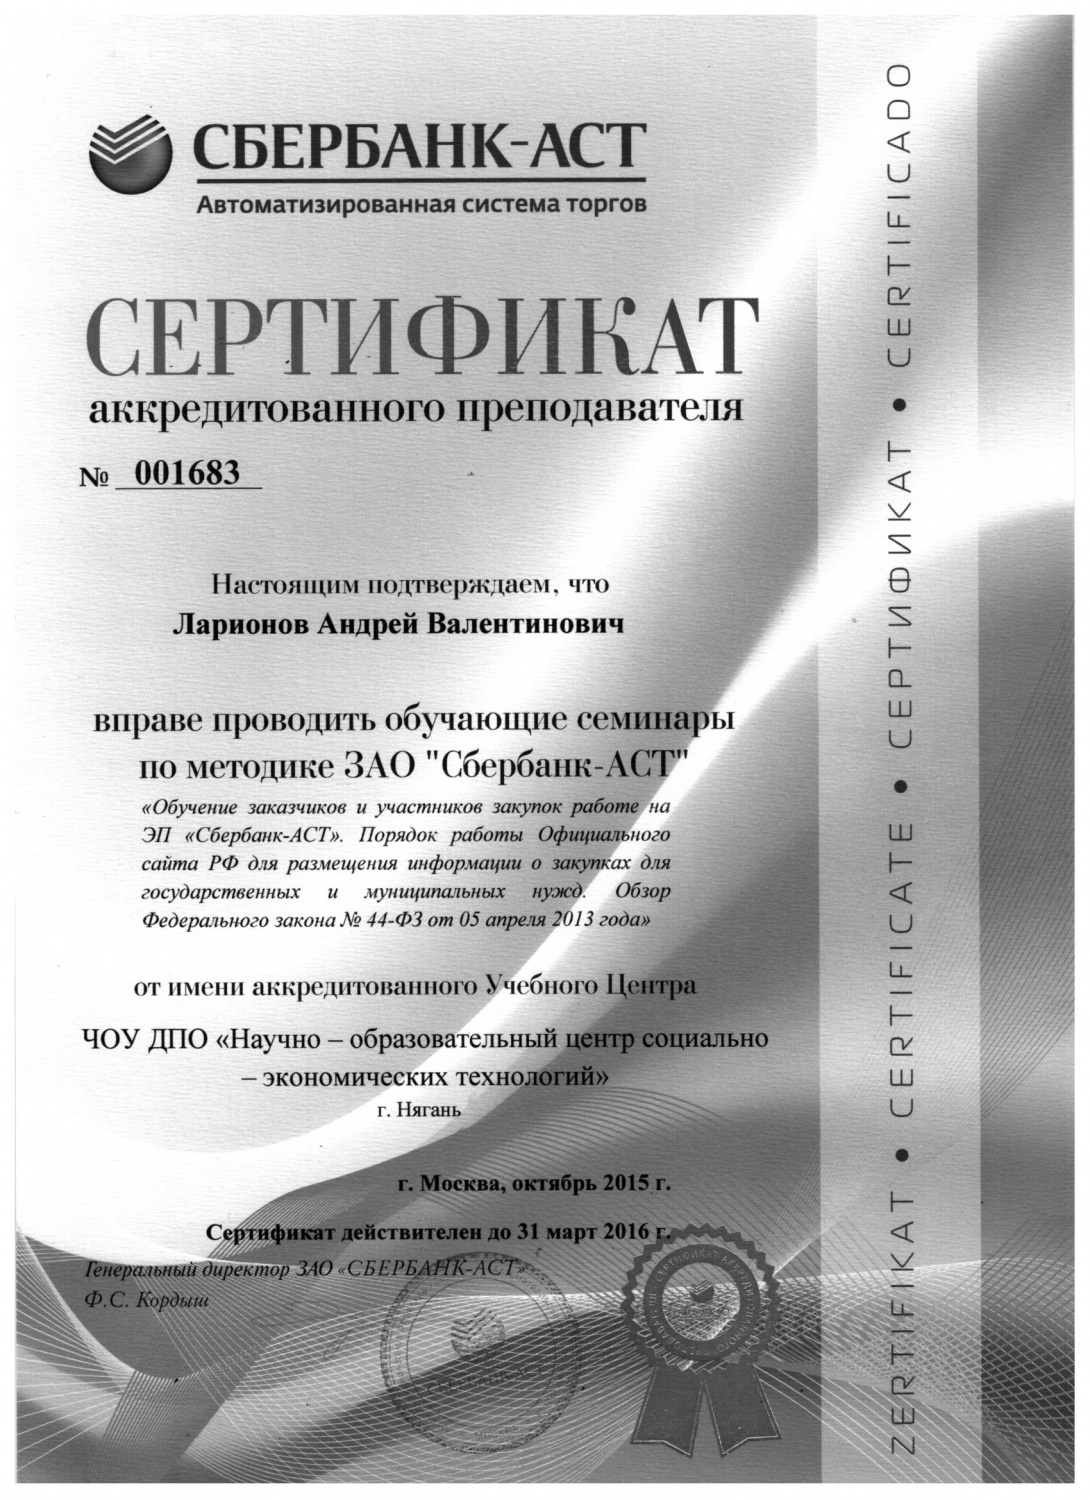 Сертификат аккредитованного преподавателя ЗАО "Сбербанк-АСТ"